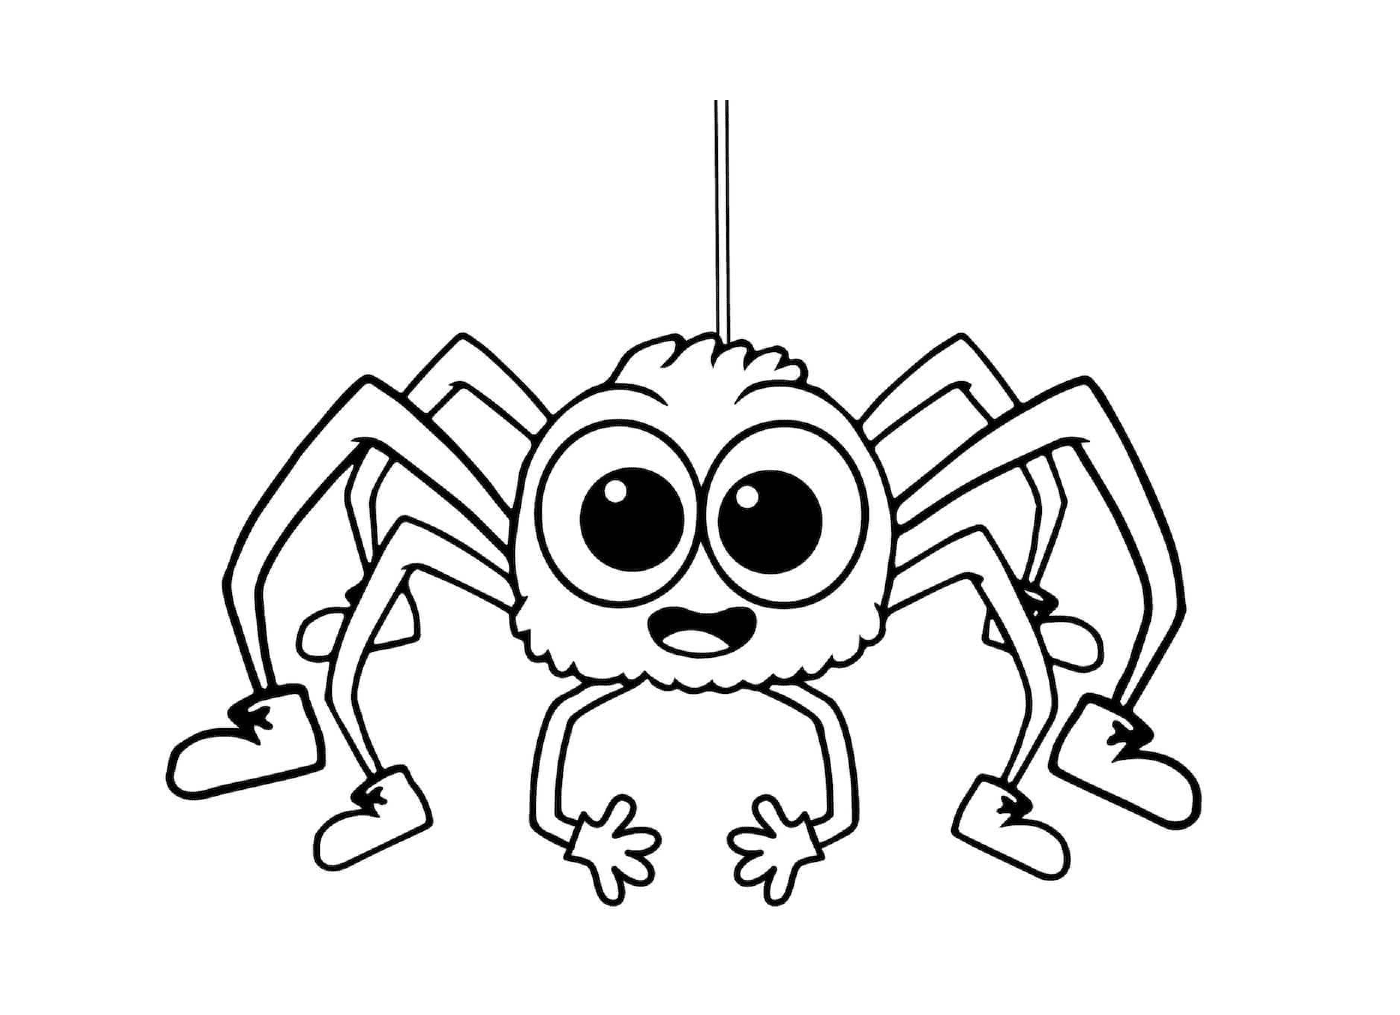   Une araignée simple et facile pour les enfants 